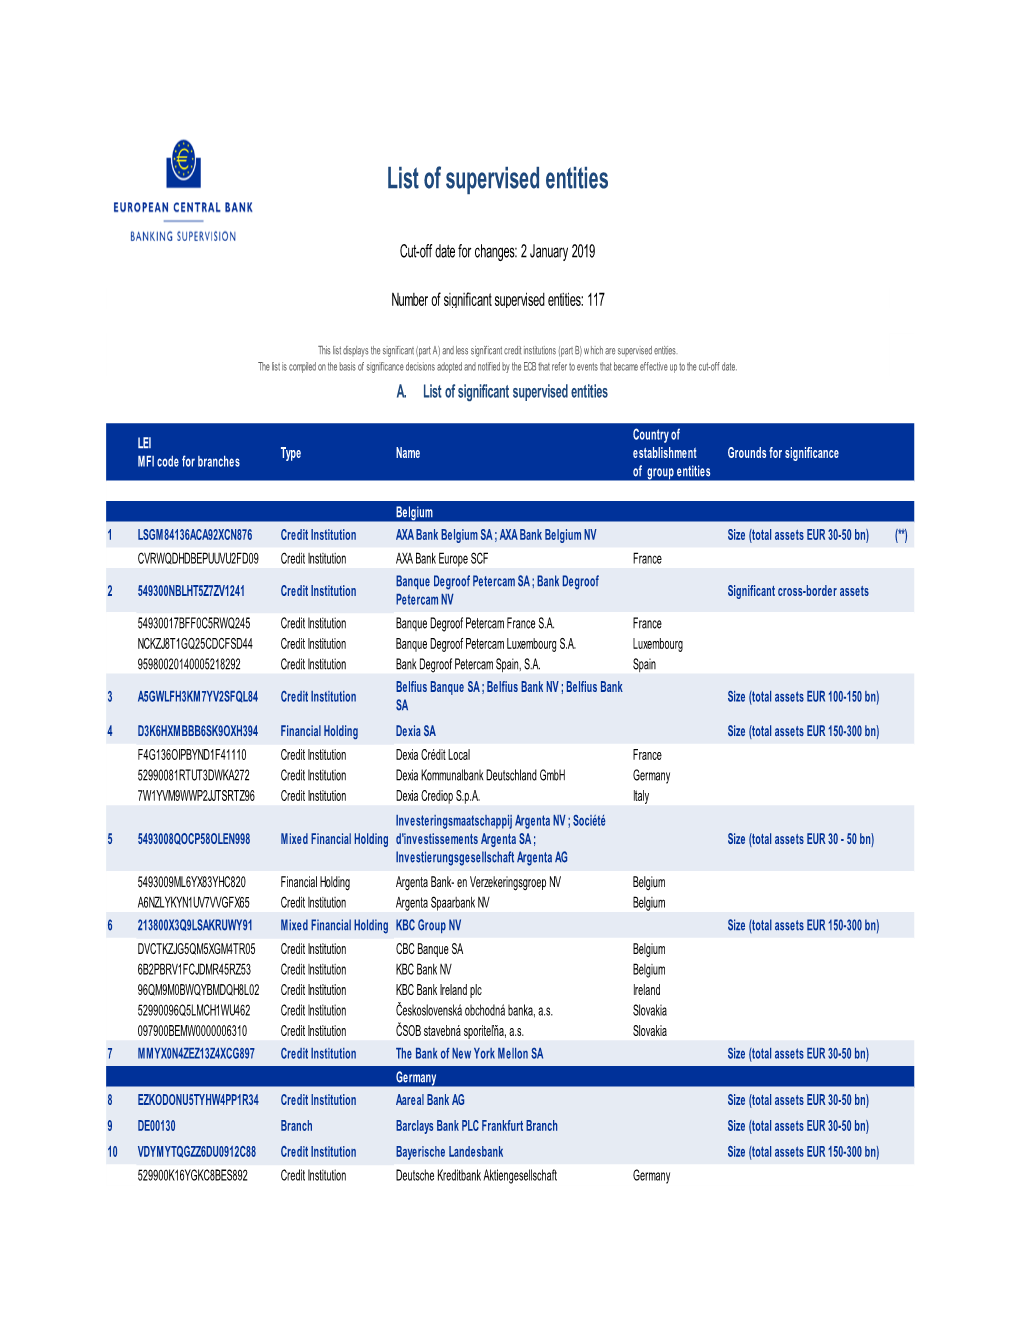 List of Supervised Entities